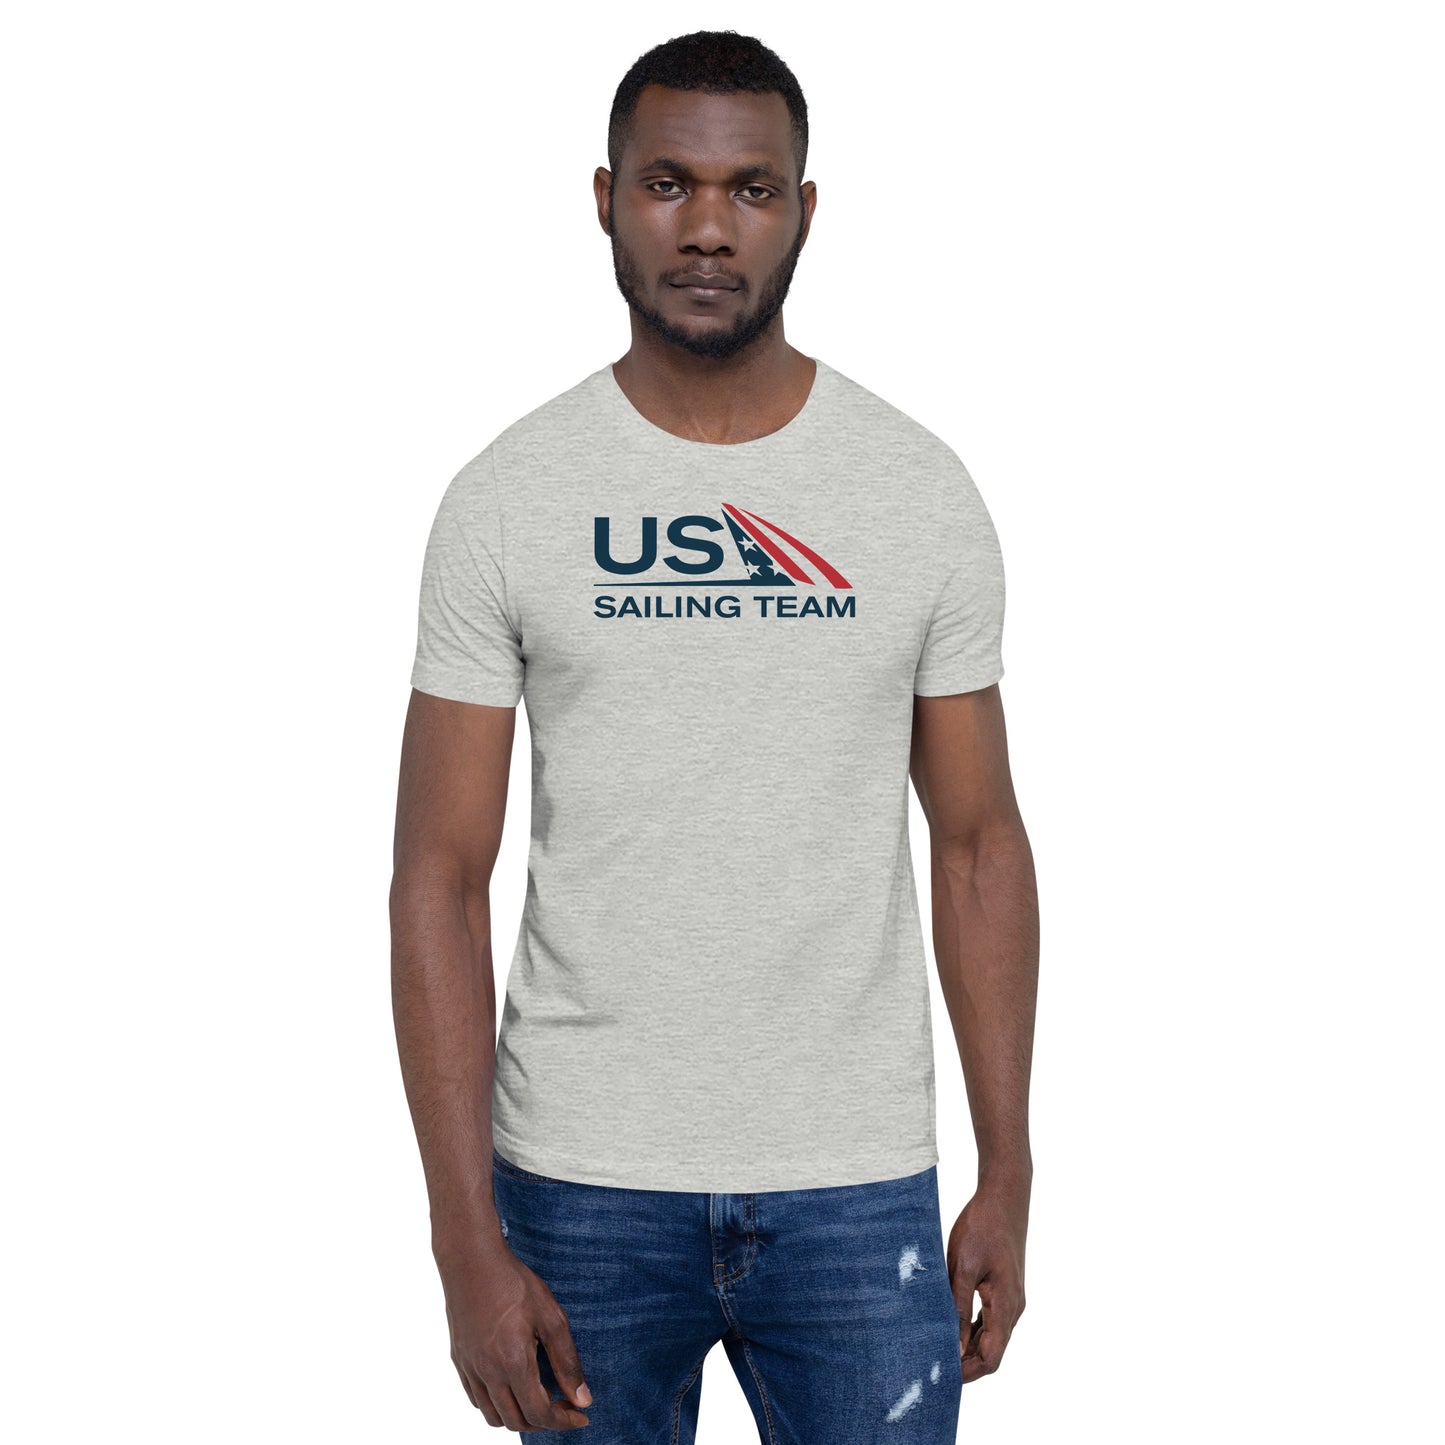 Unisex Tee (US Sailing Team)